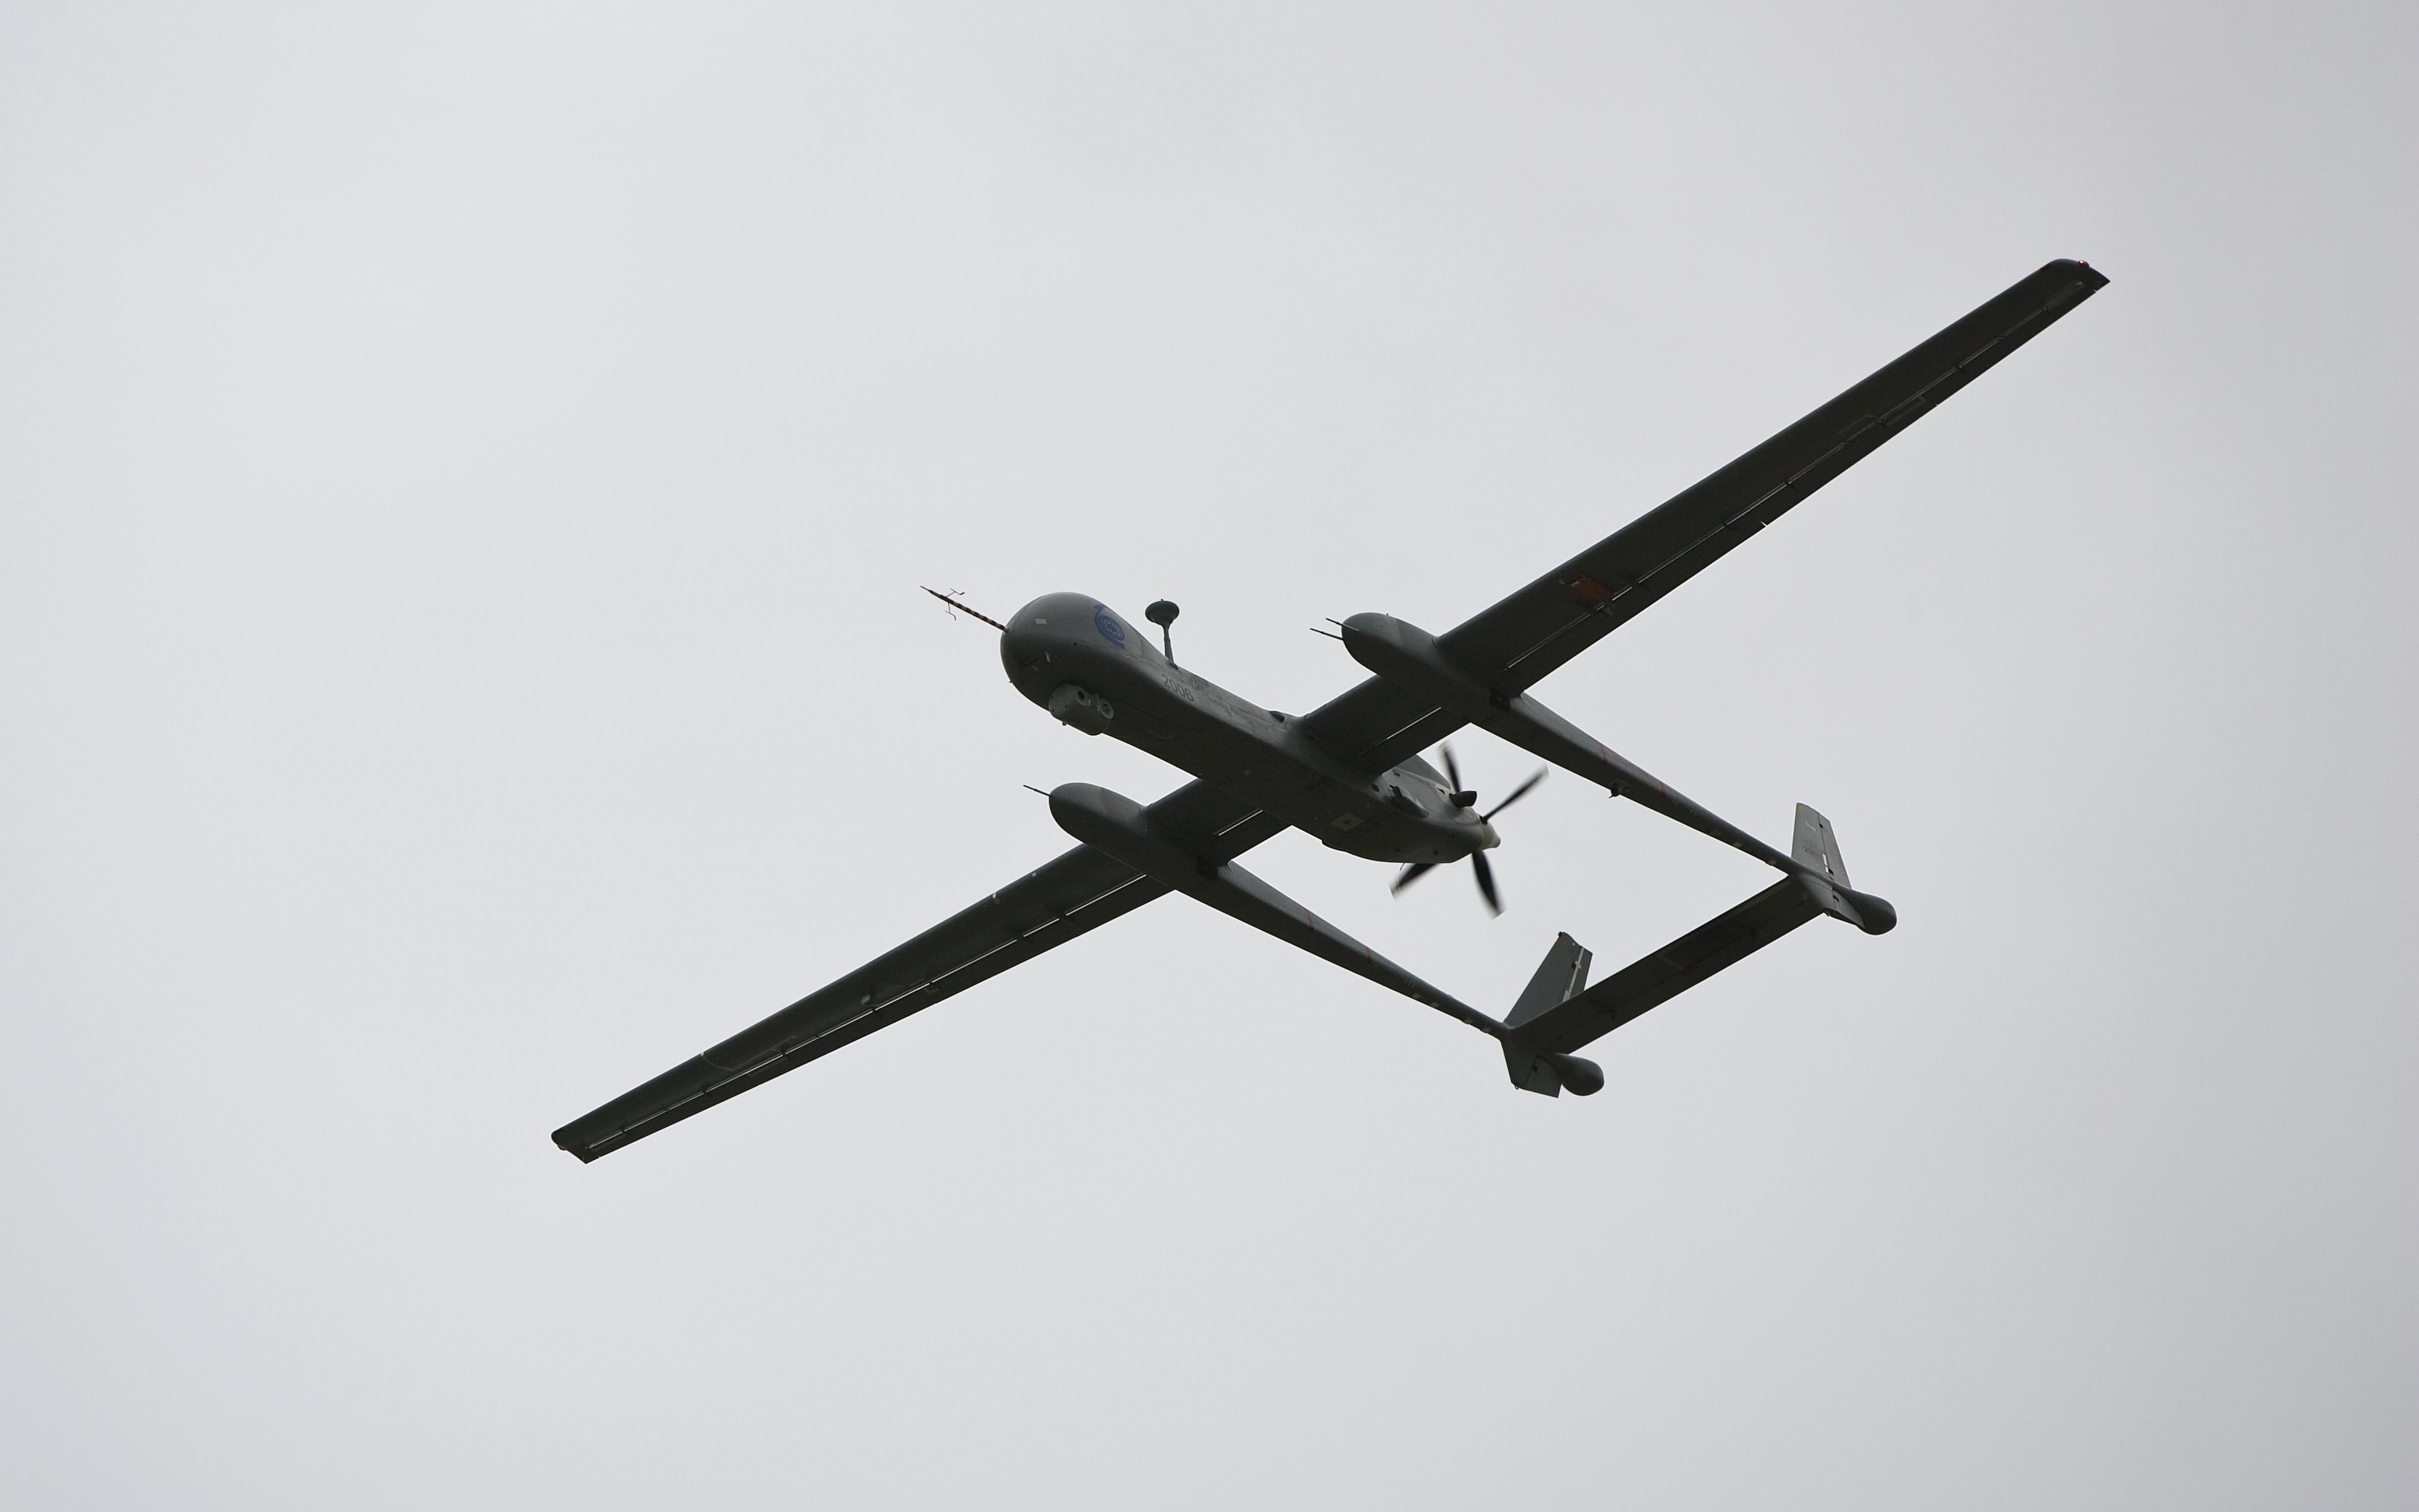 US-Rüstungsfirma klagt gegen Drohnendeal der Bundeswehr mit Israel